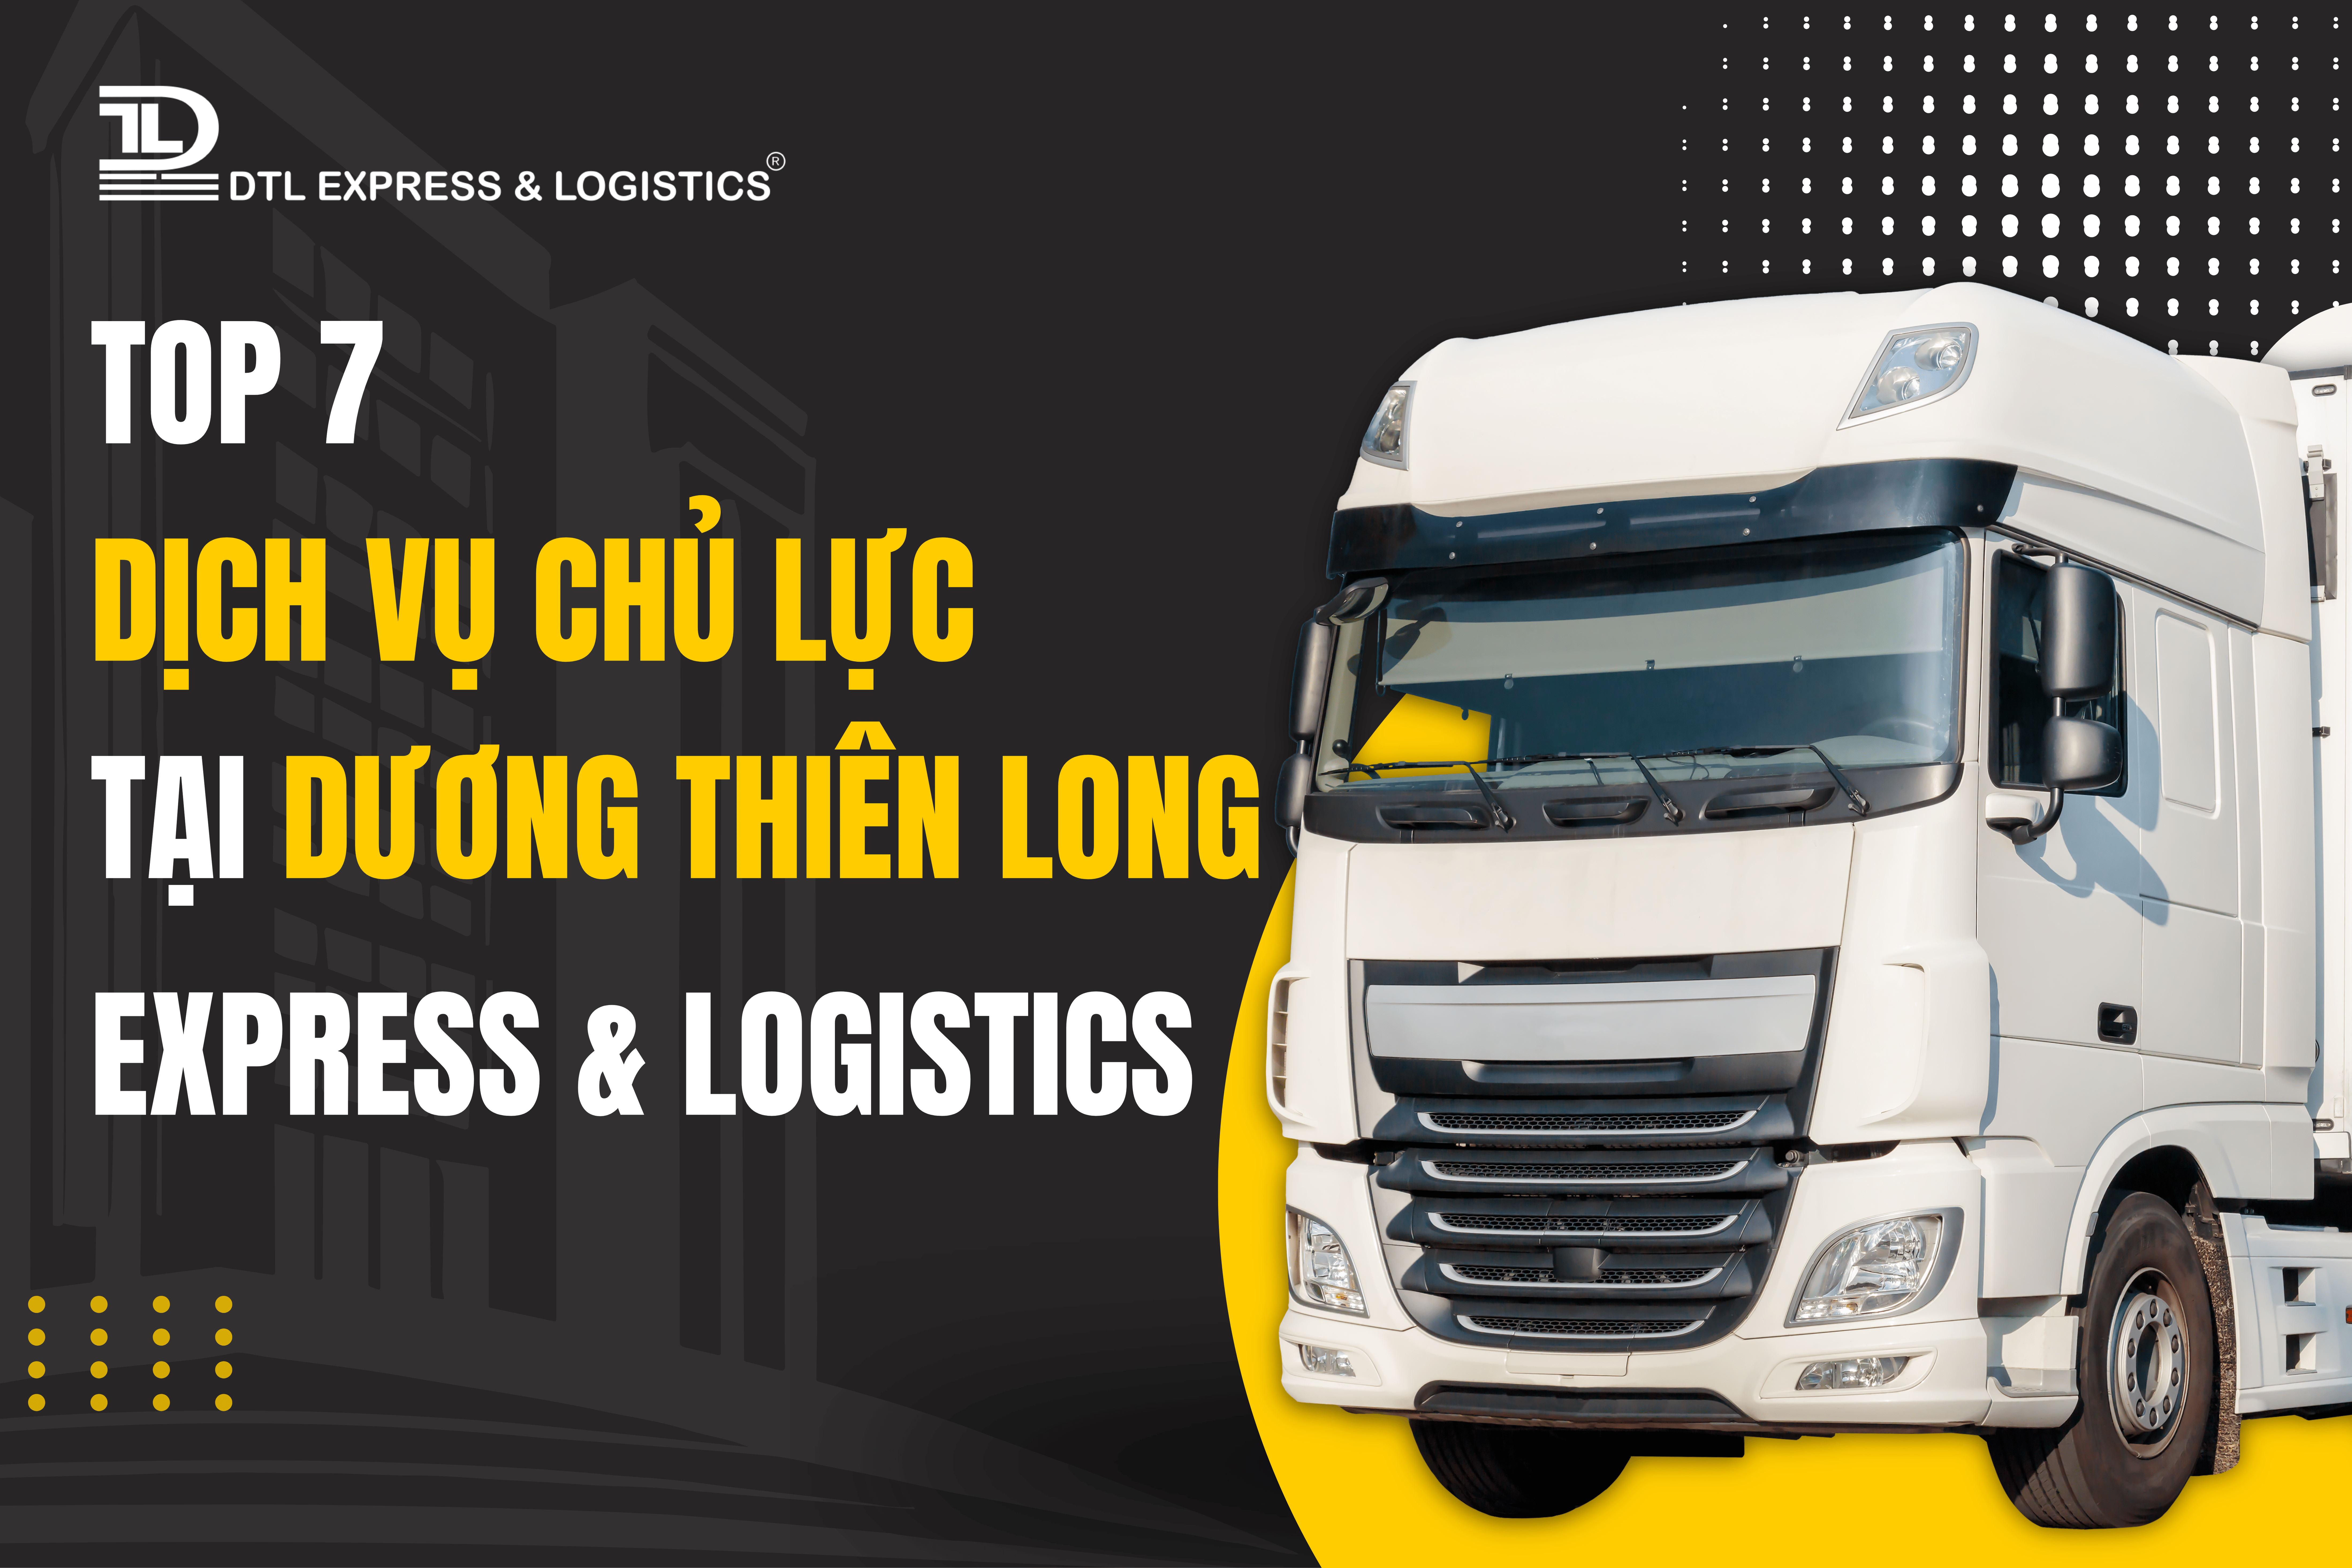 Tham khảo ngay 7 dịch vụ logistics nổi bật tại Dương Thiên Long